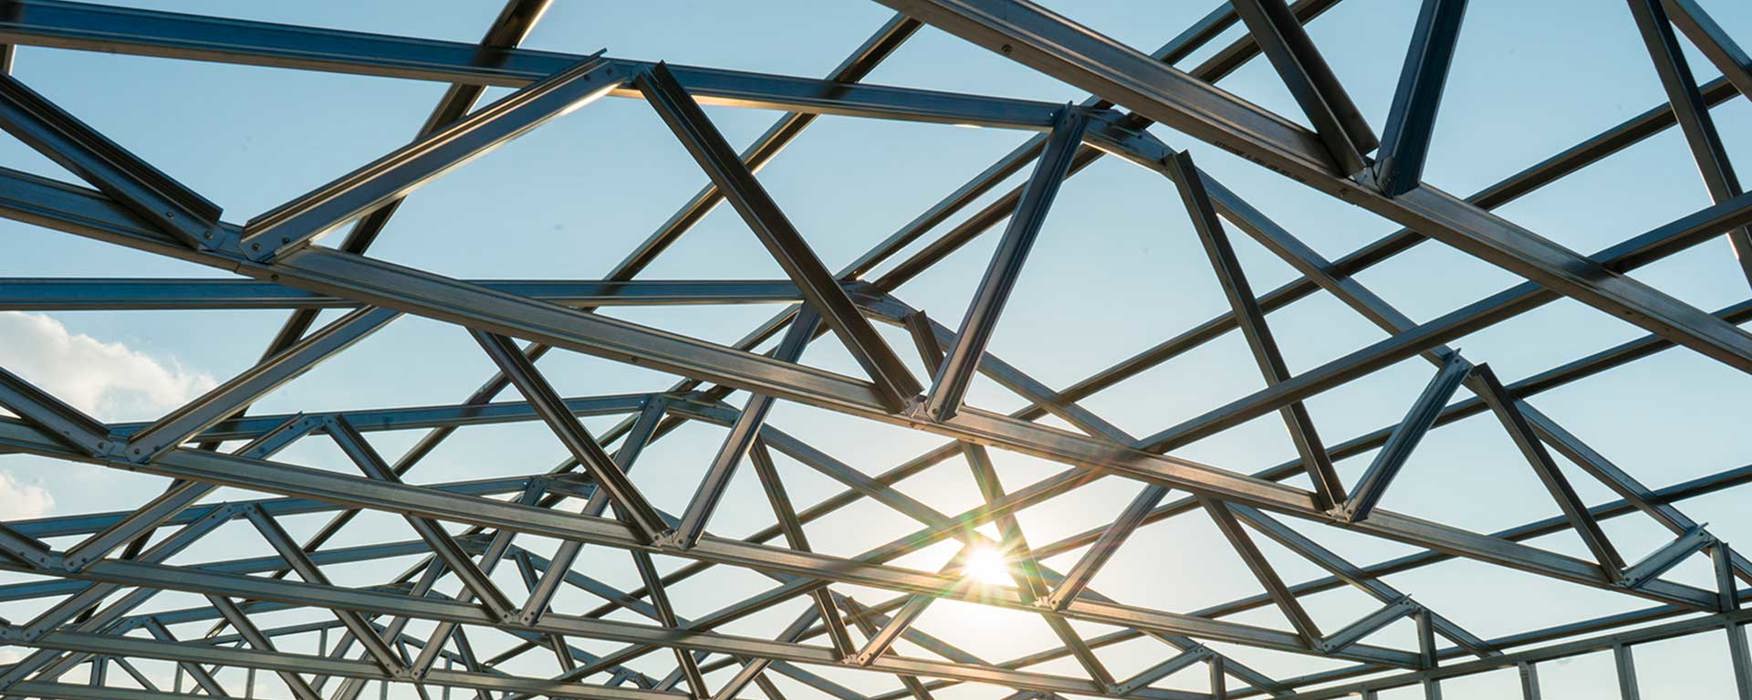 Light Steel Framing: construção rápida, eficiente e sustentável